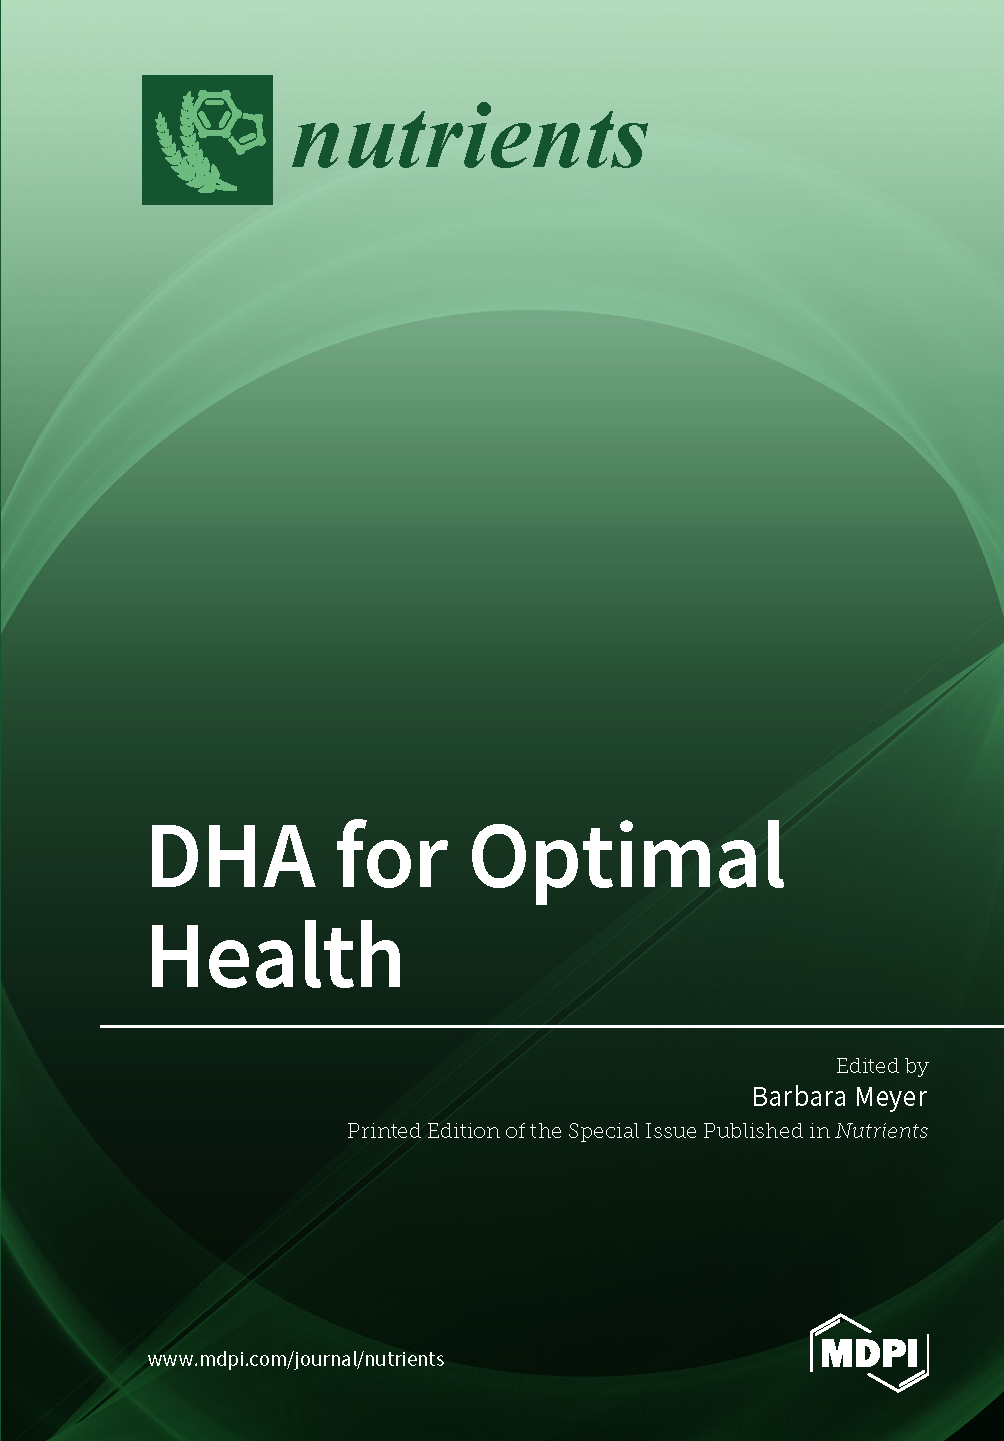 DHA for Optimal Health